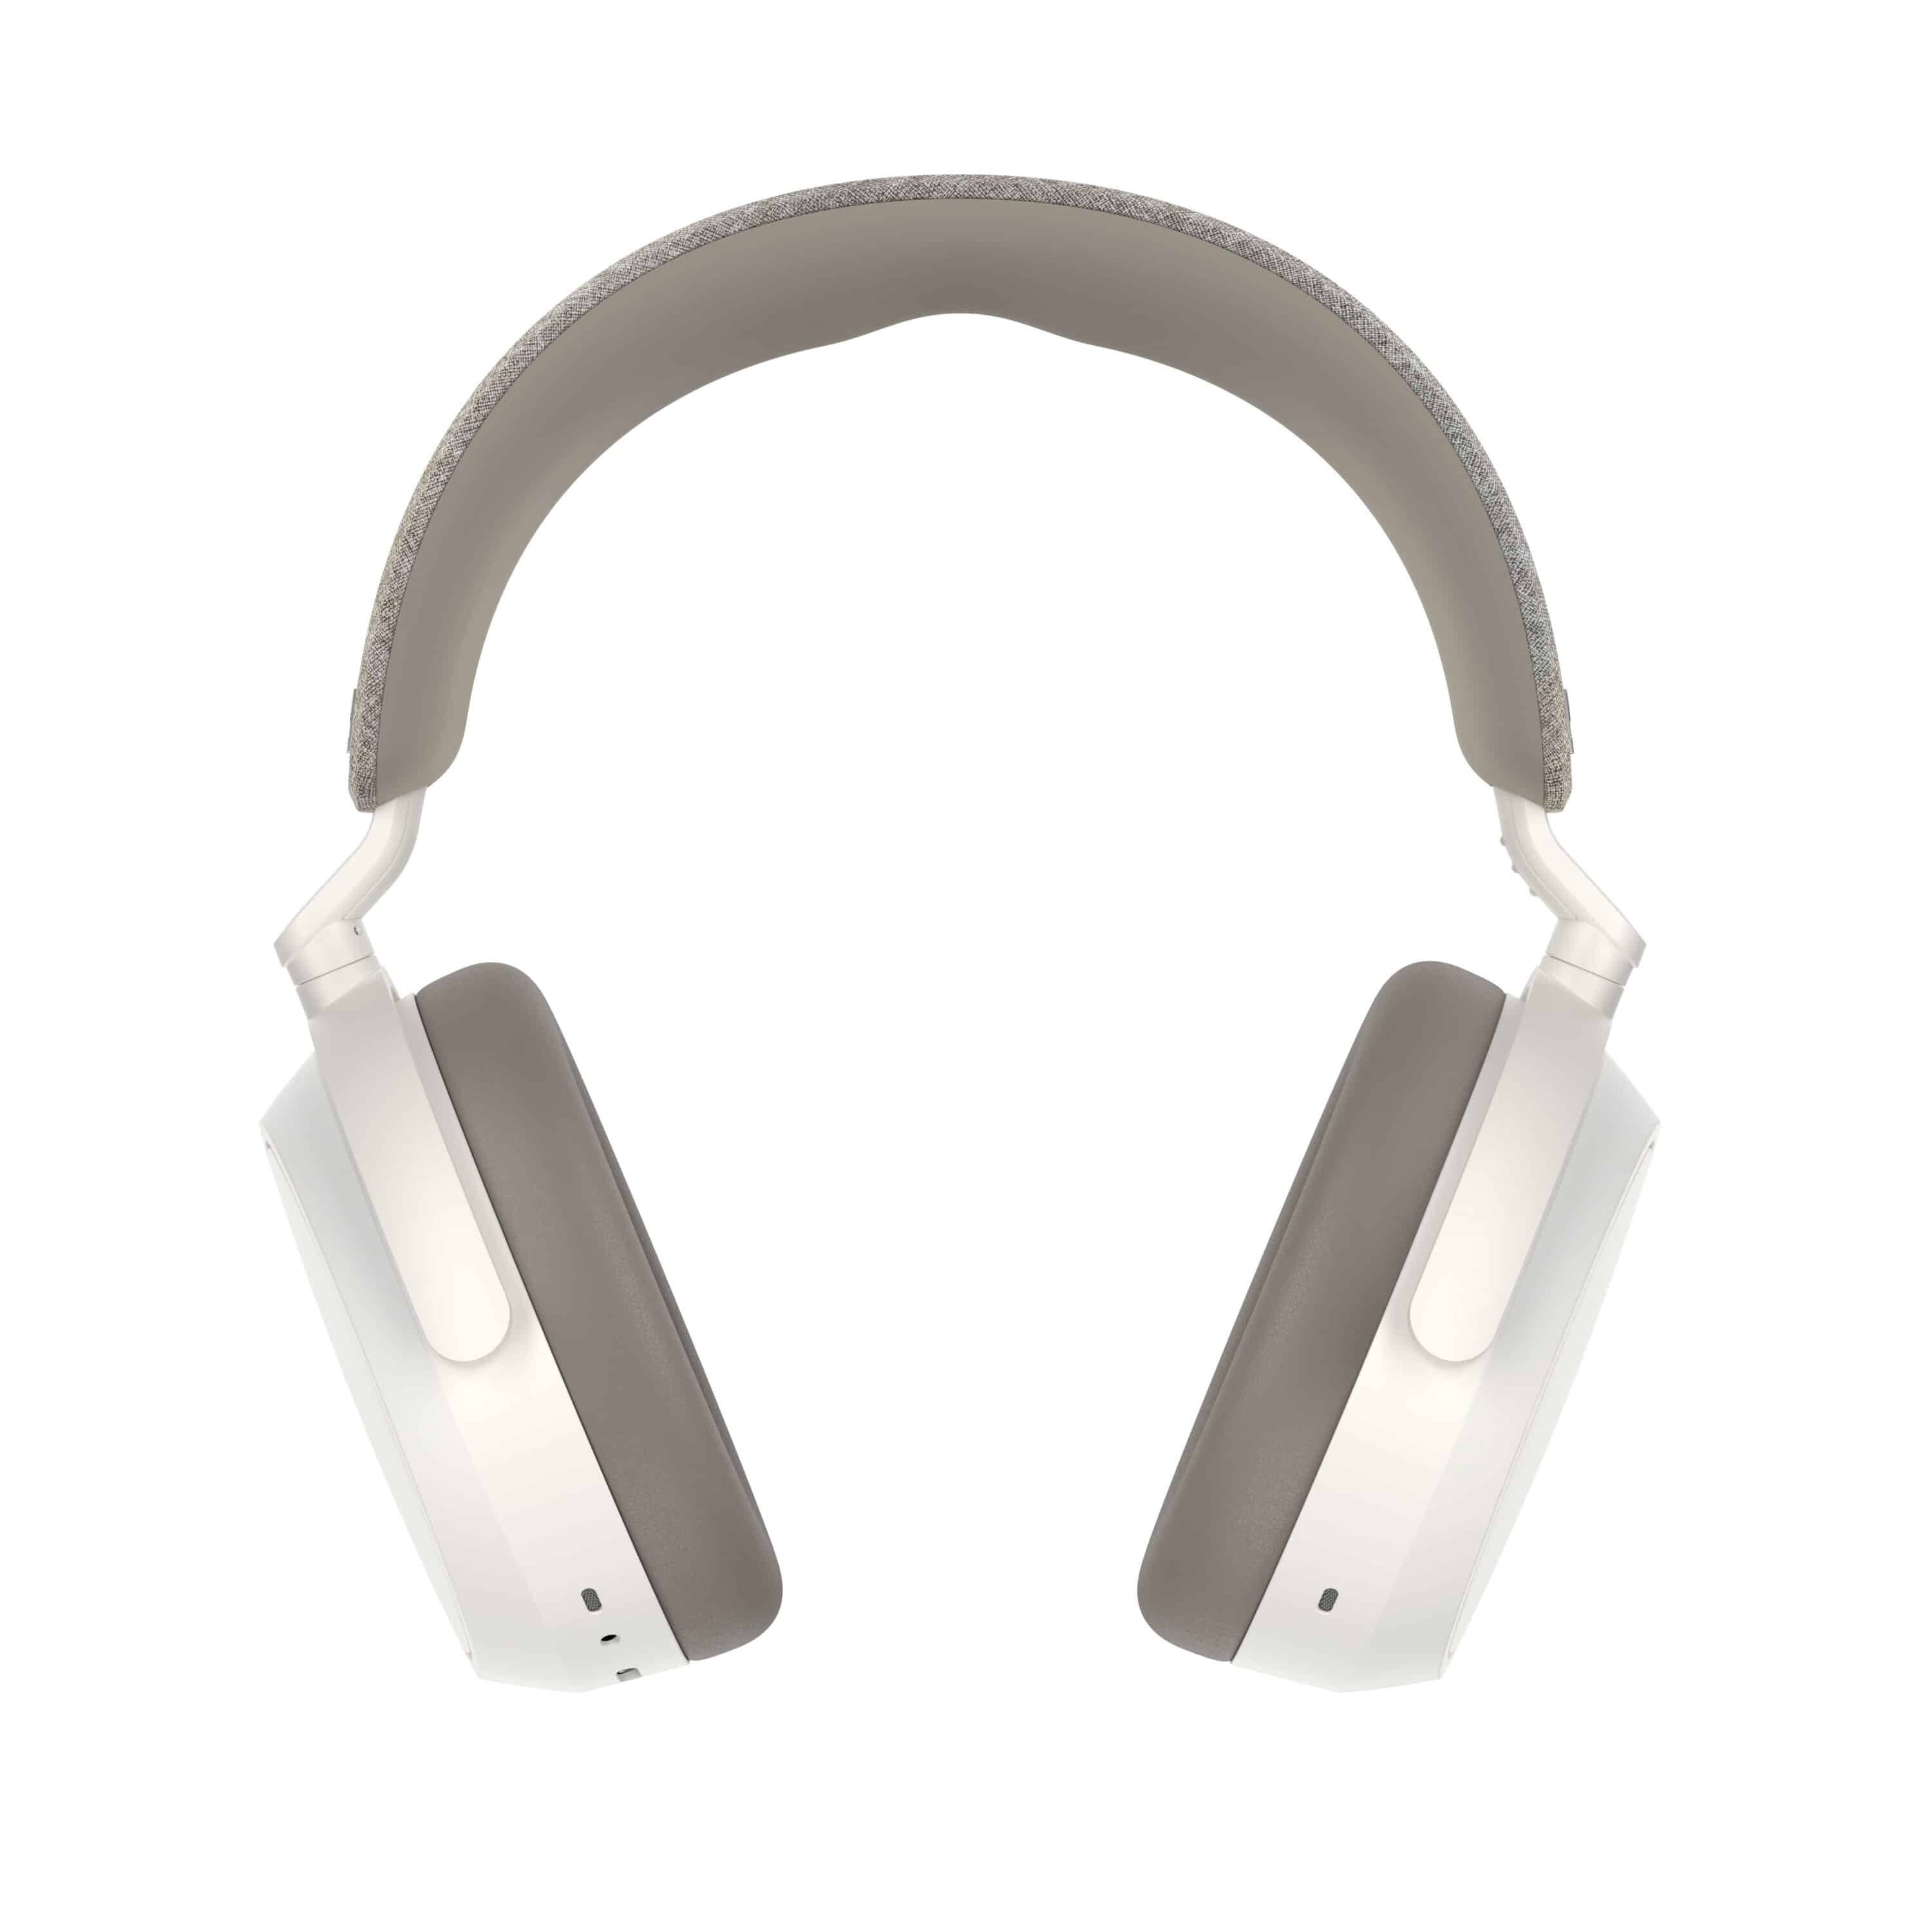 オーディオ機器 ヘッドフォン Sennheiser Momentum 4 Wireless: All info on the new ANC headphones